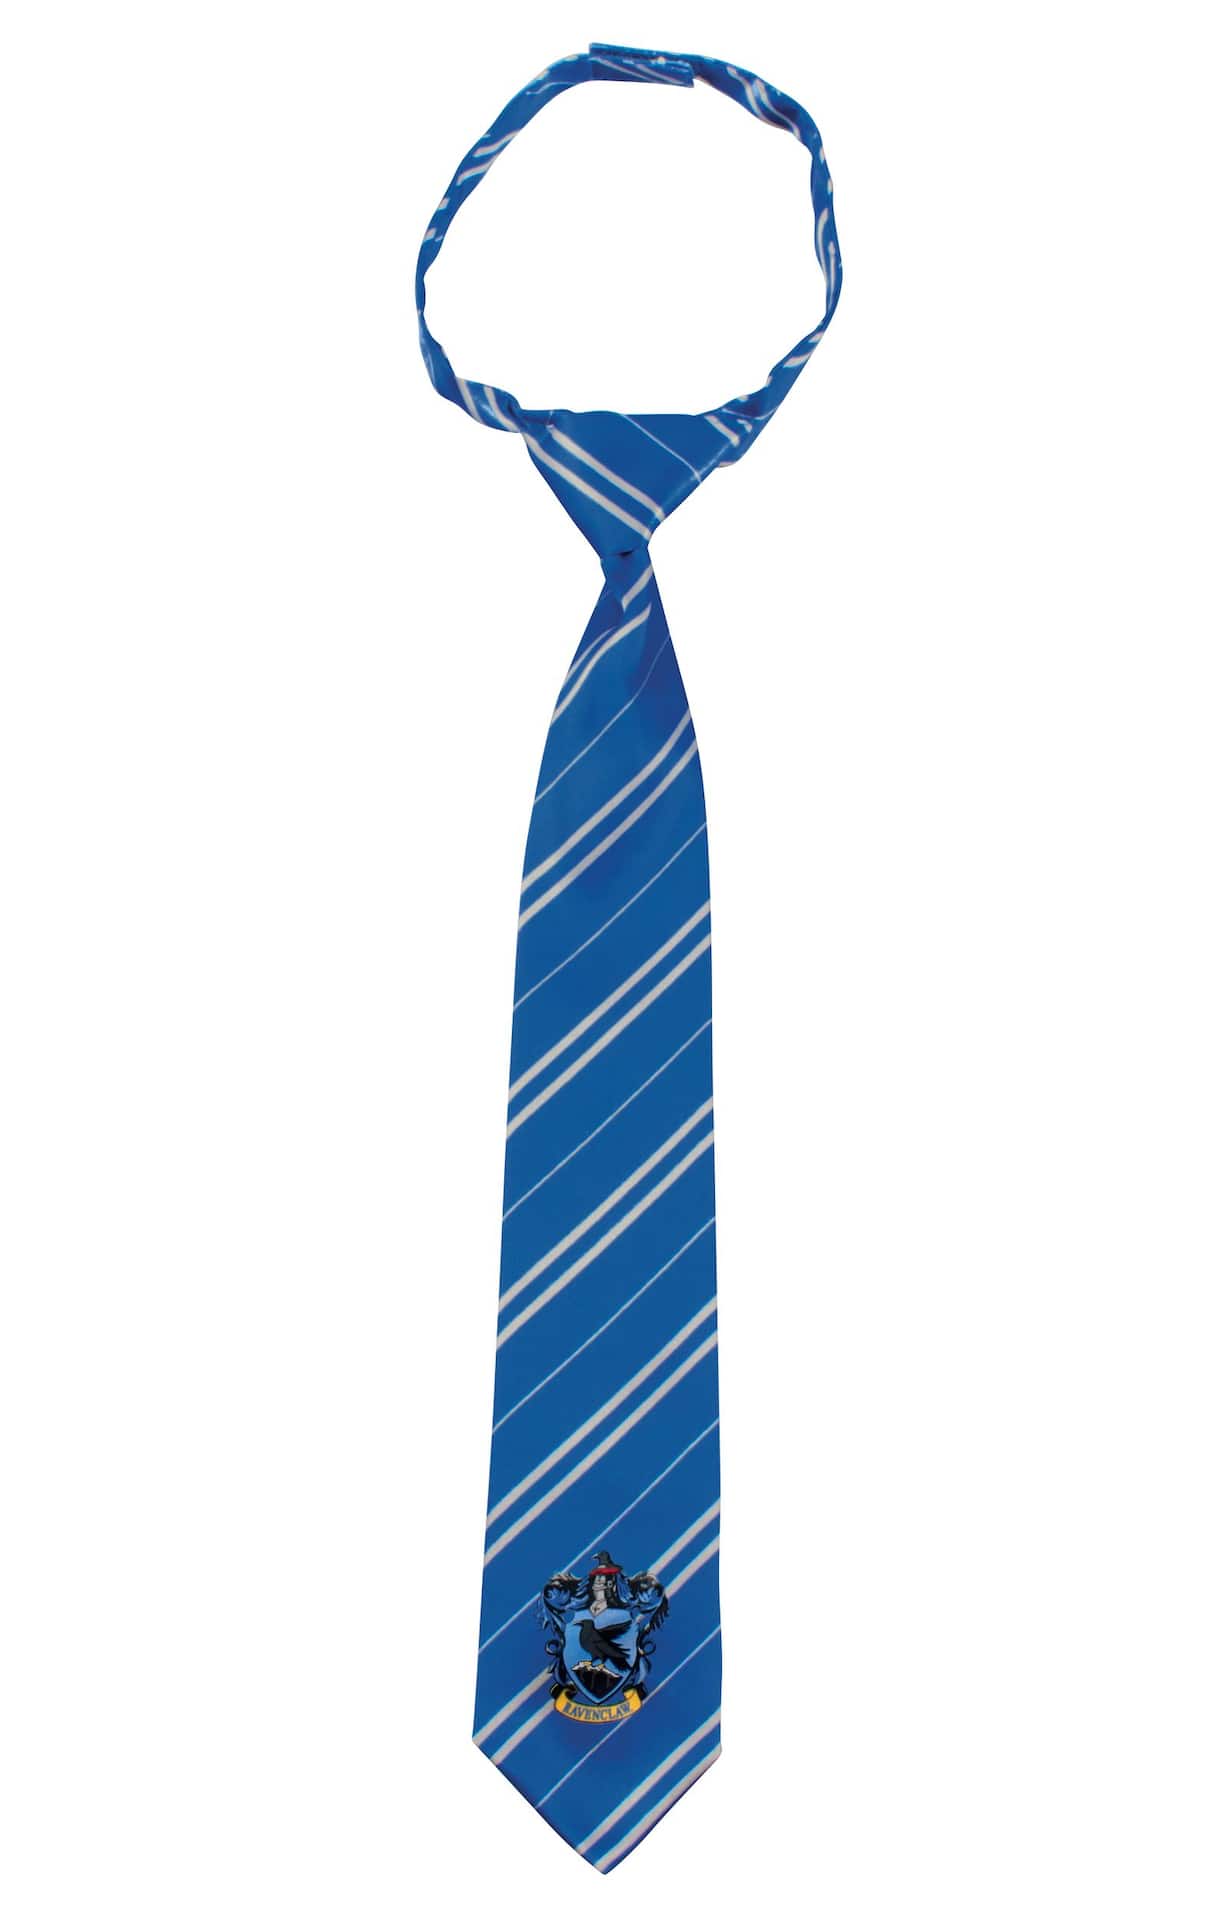 Cravate détachable Poufsouffle (Taille unique) - Halloween